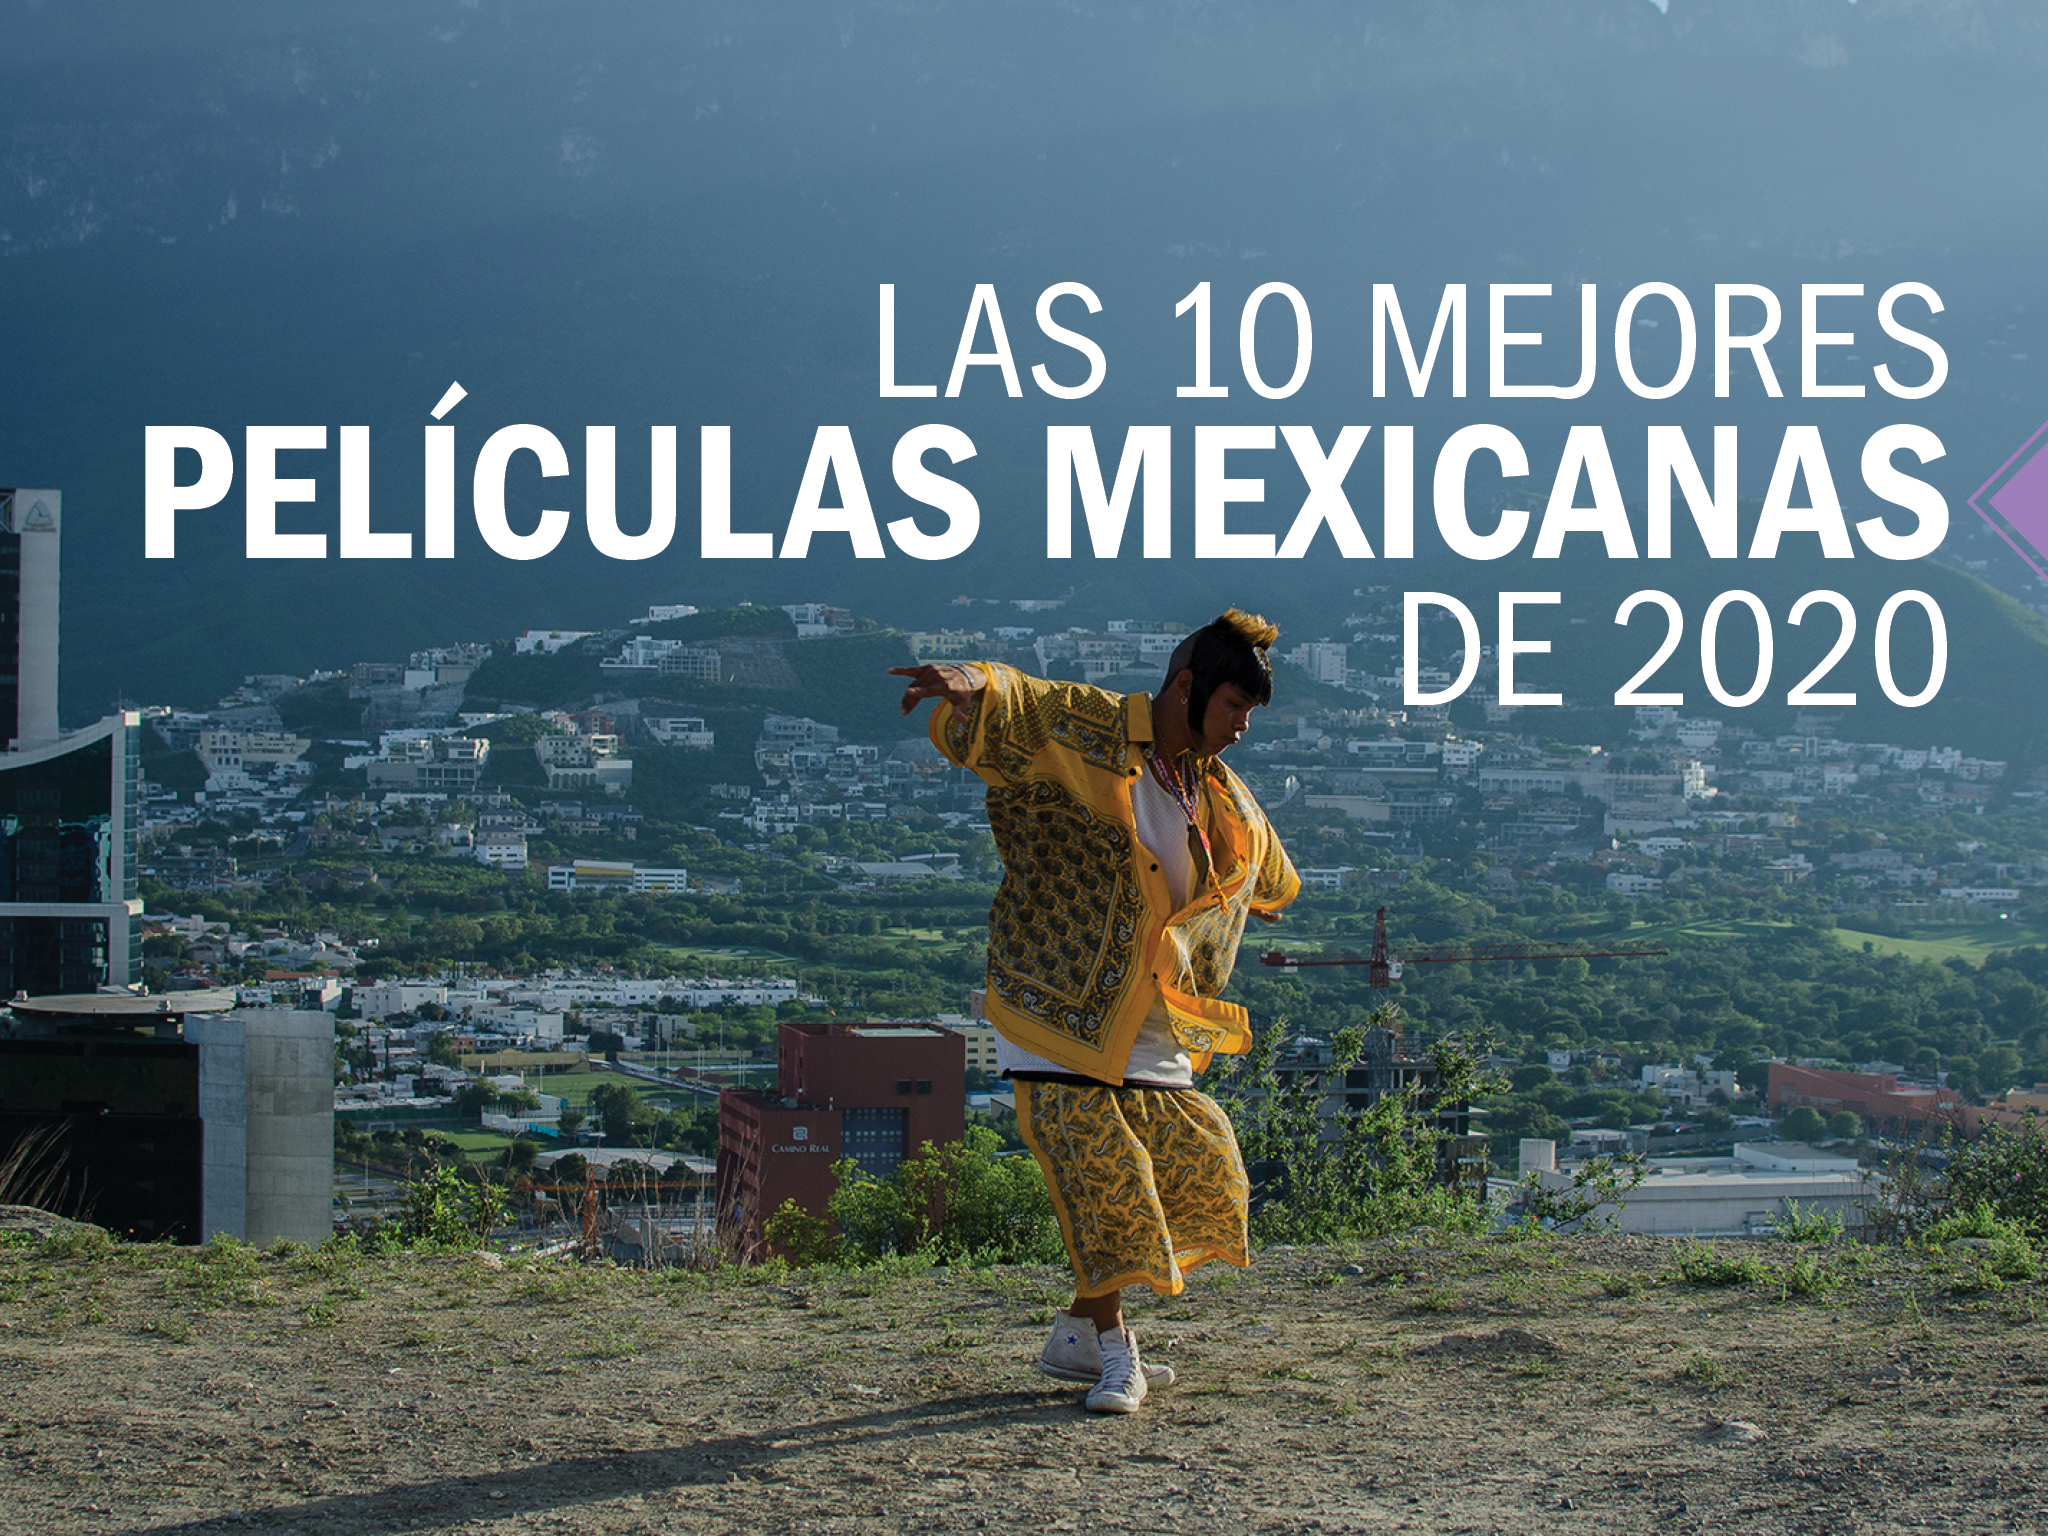 narco peliculas mexicanas 2020